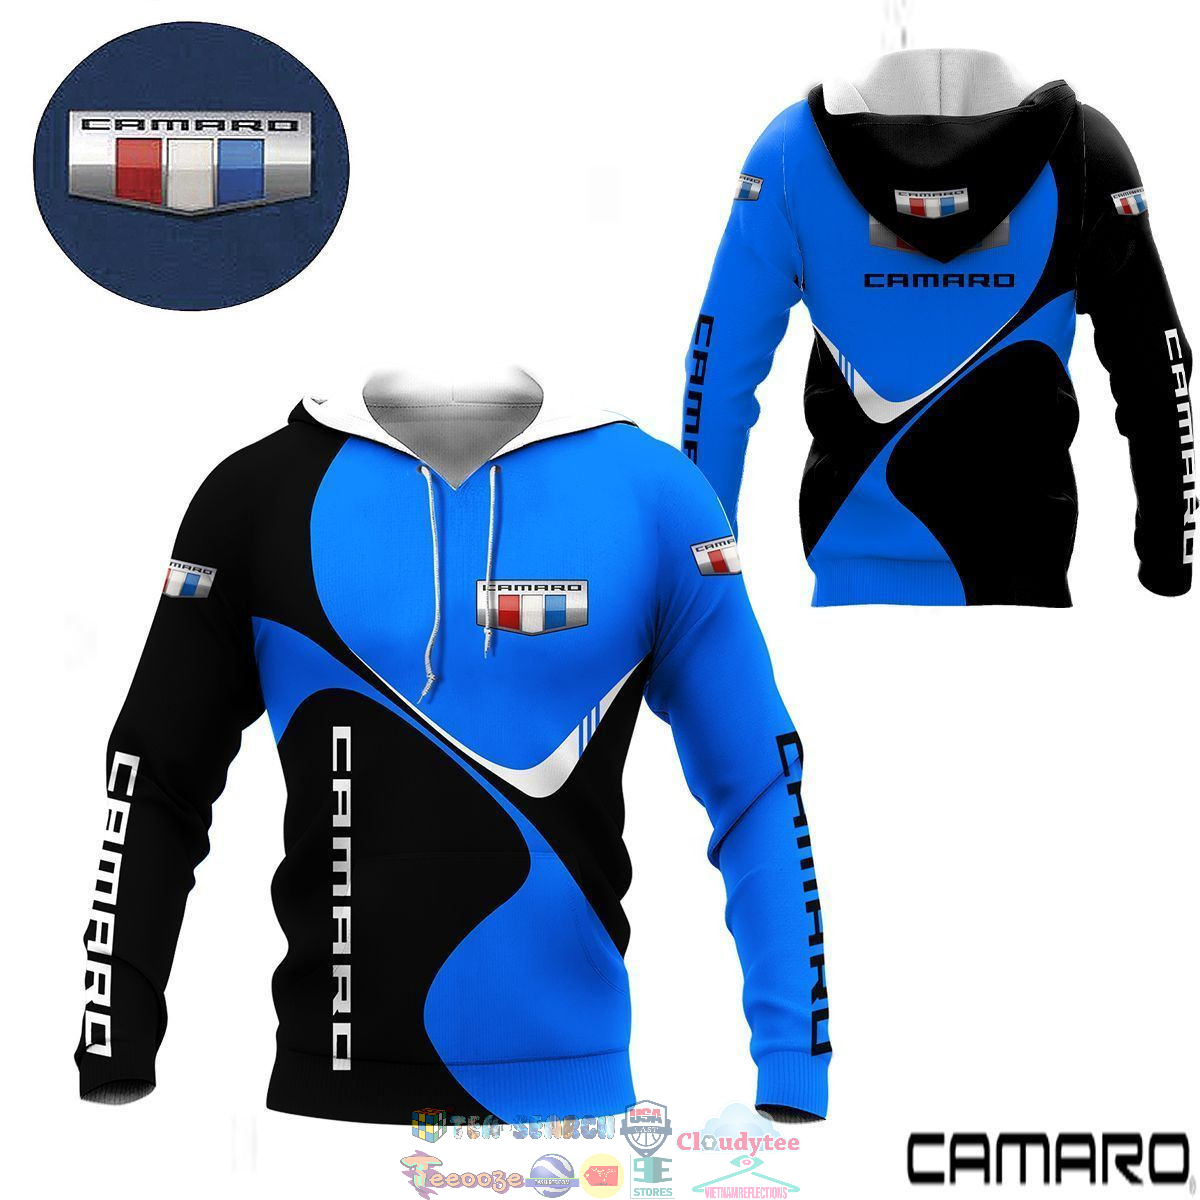 KdgxjxmR-TH130822-49xxxChevrolet-Camaro-ver-8-3D-hoodie-and-t-shirt3.jpg